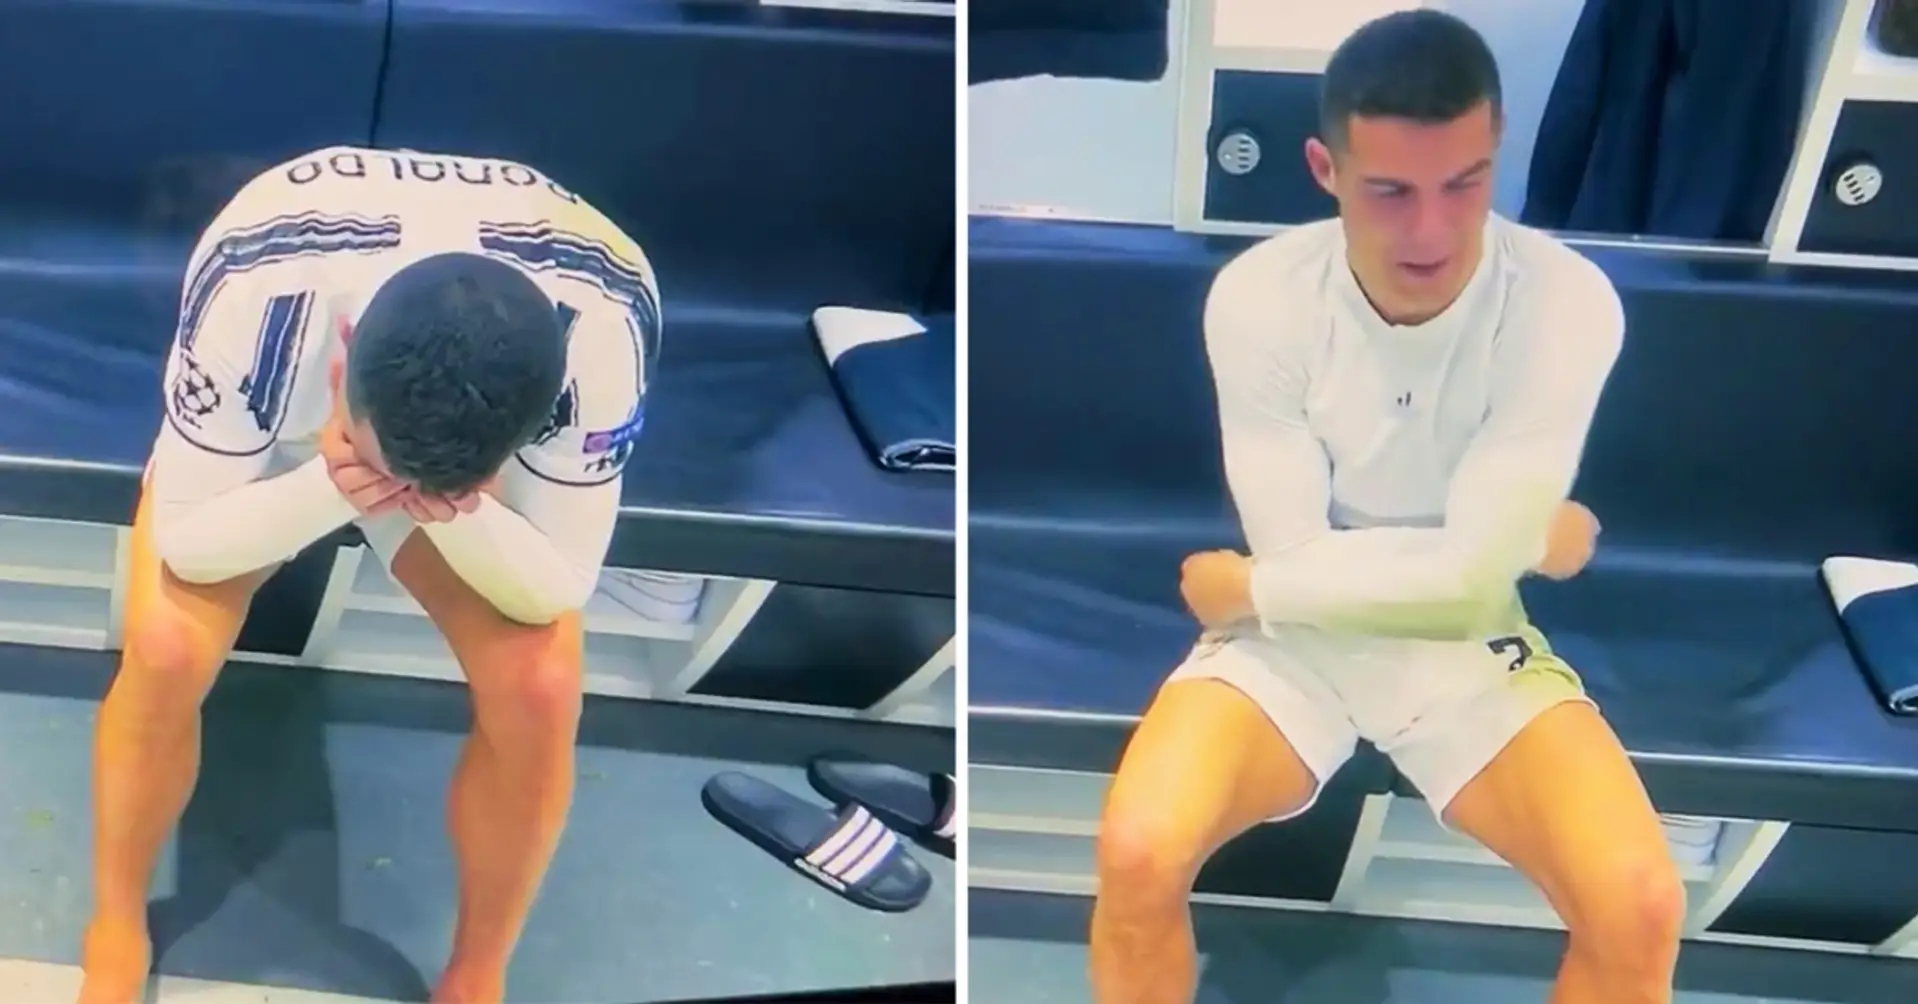 NOUVEAU: des images de Cristiano Ronaldo pleurant dans le vestiaire de la Juventus ont été publiées